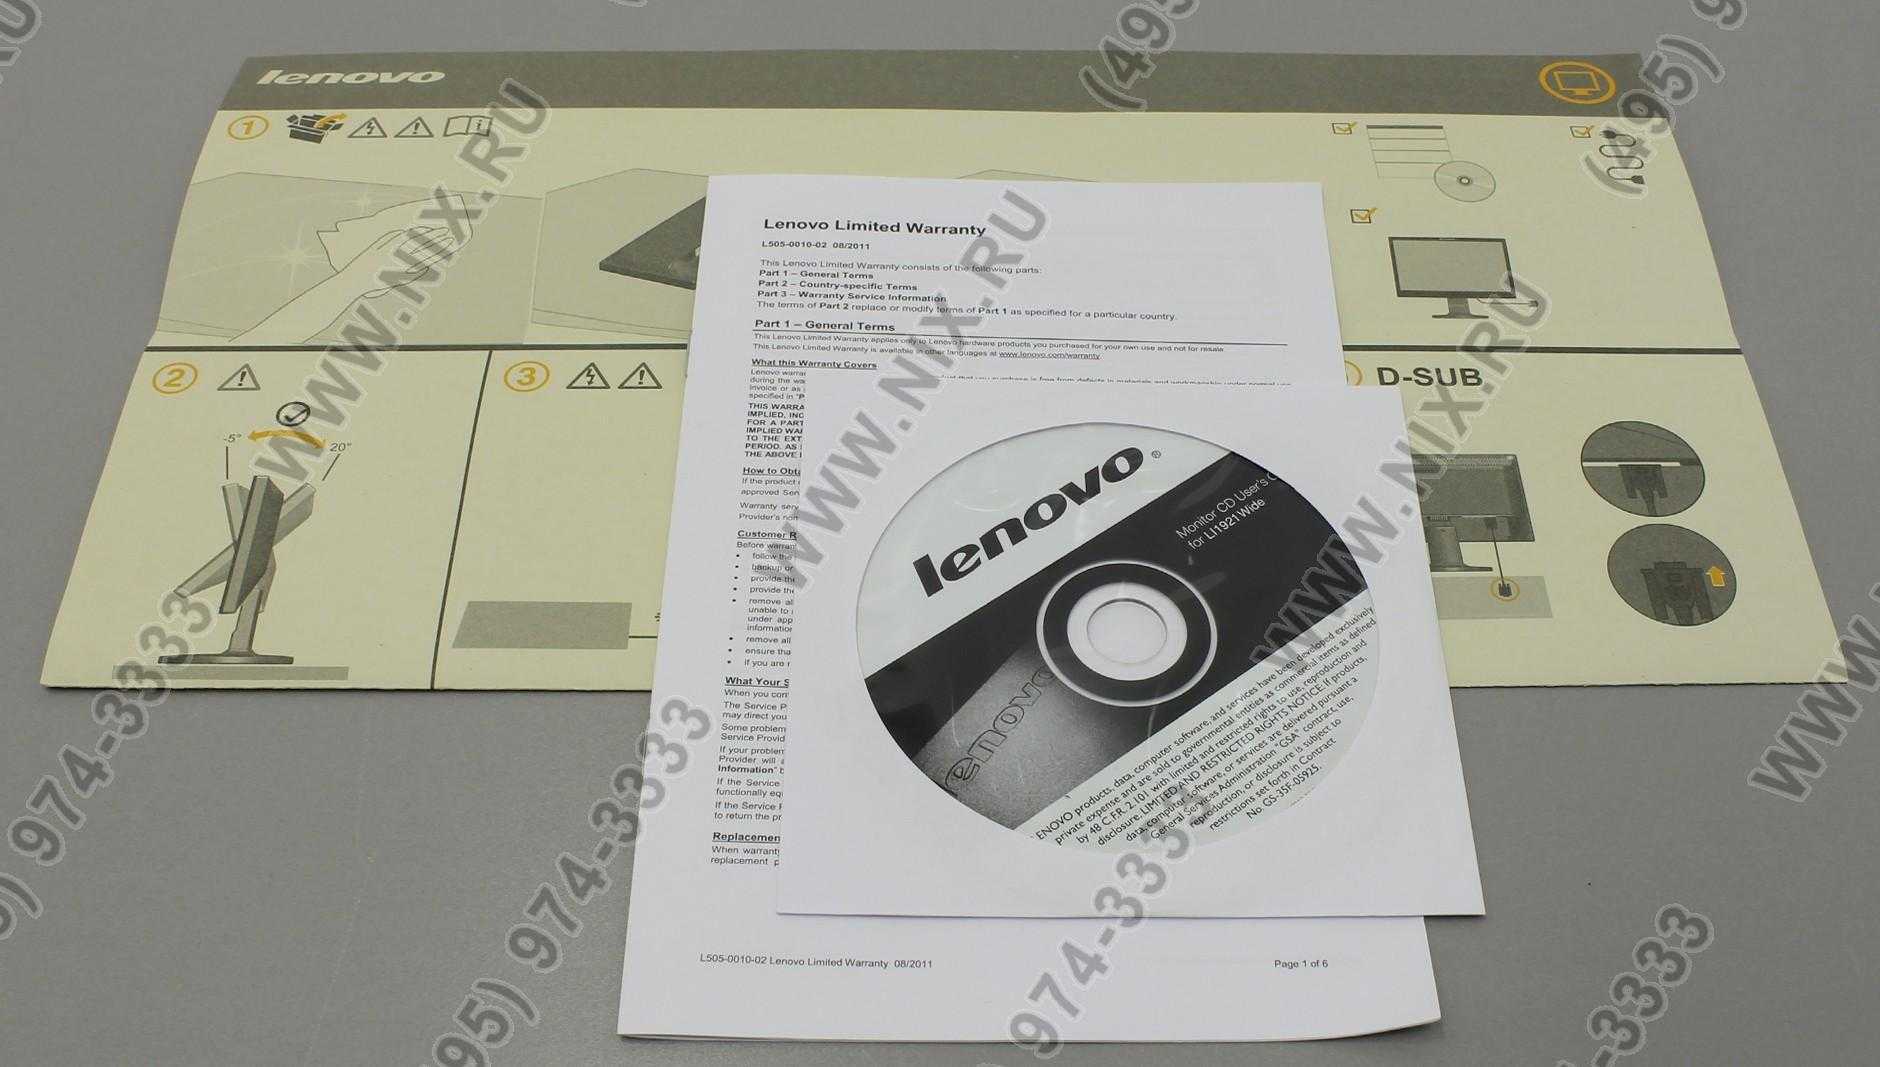 Жк монитор 18.5" lenovo li1921wa — купить, цена и характеристики, отзывы